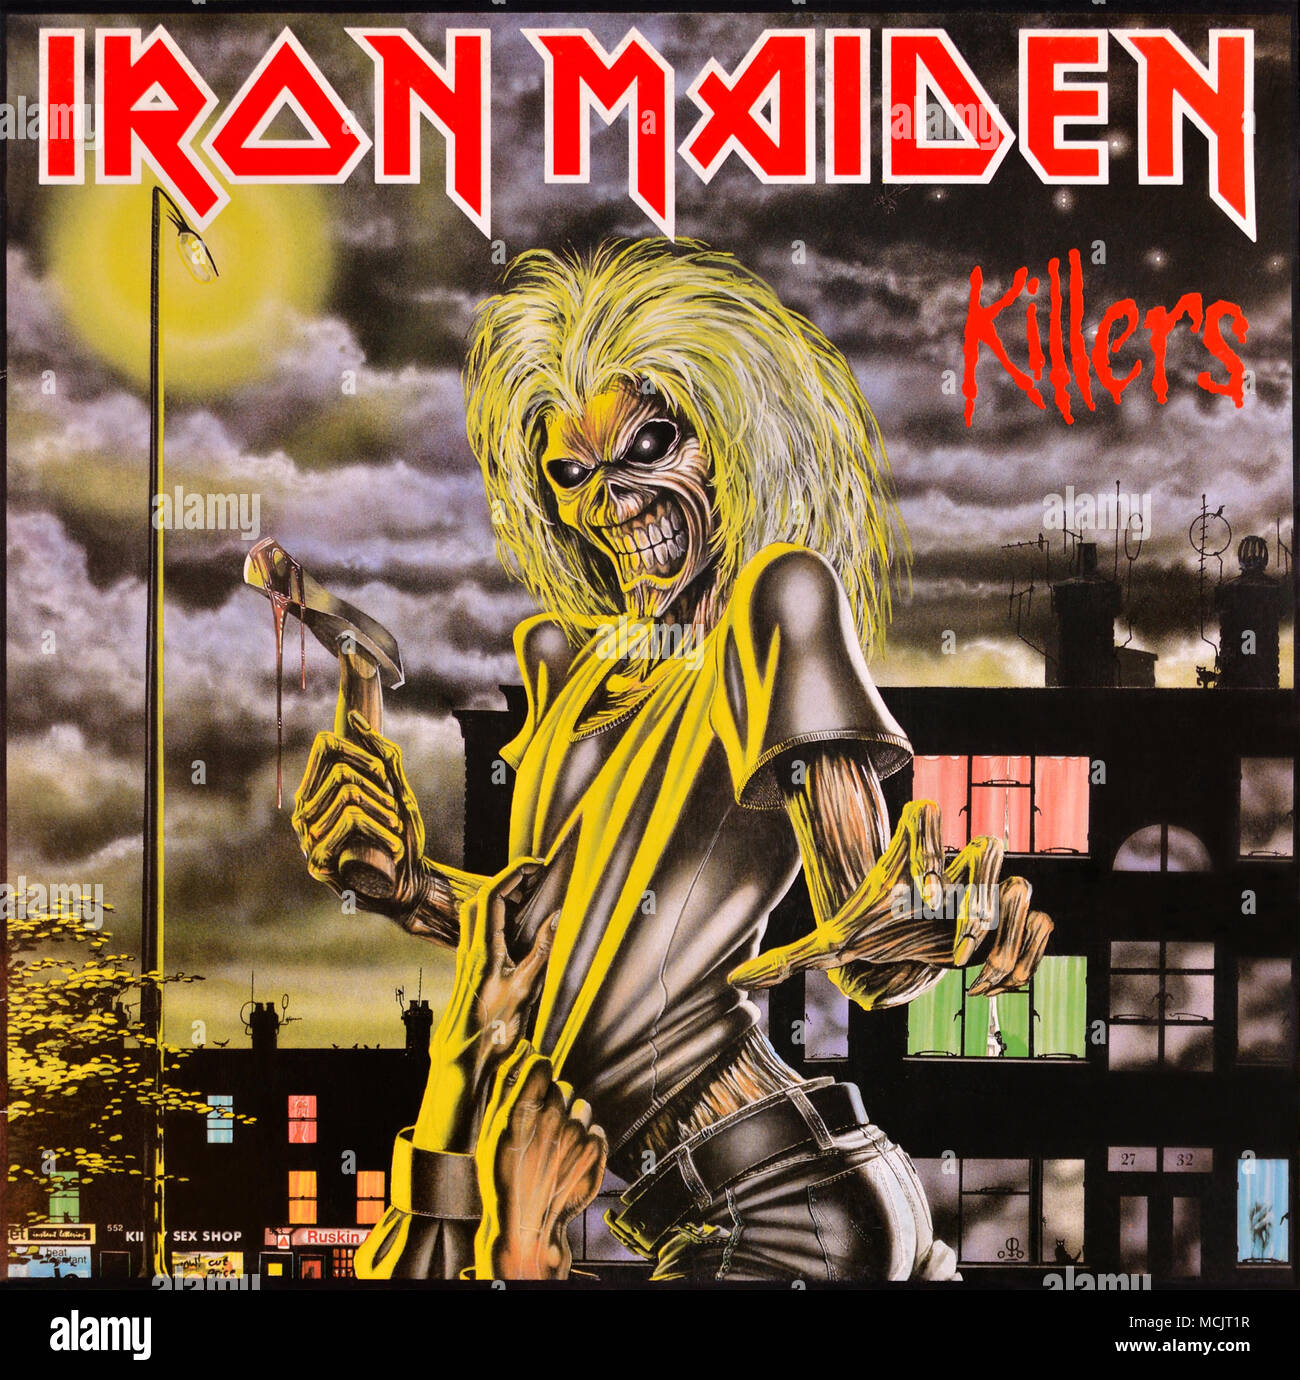 Iron Maiden - original Vinyl Album Cover - Killers - 1986 Stockfoto